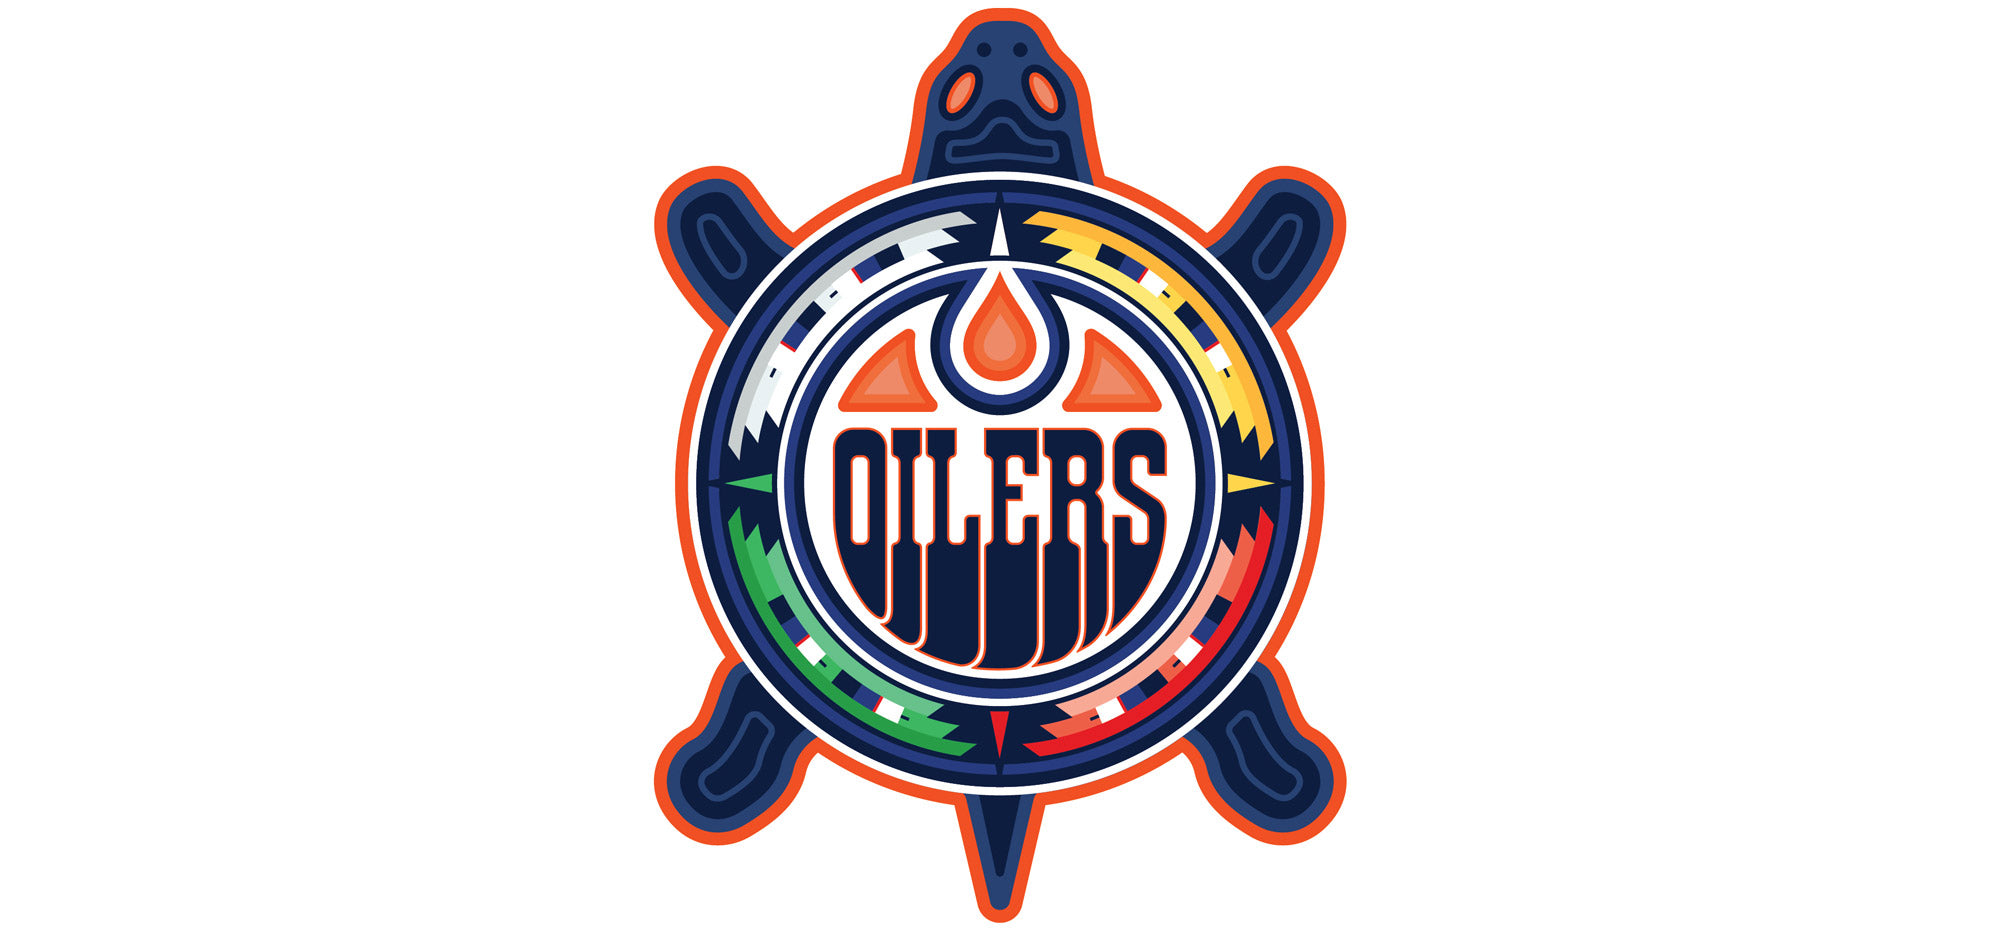 Oilers showcase Indigenous designed logo